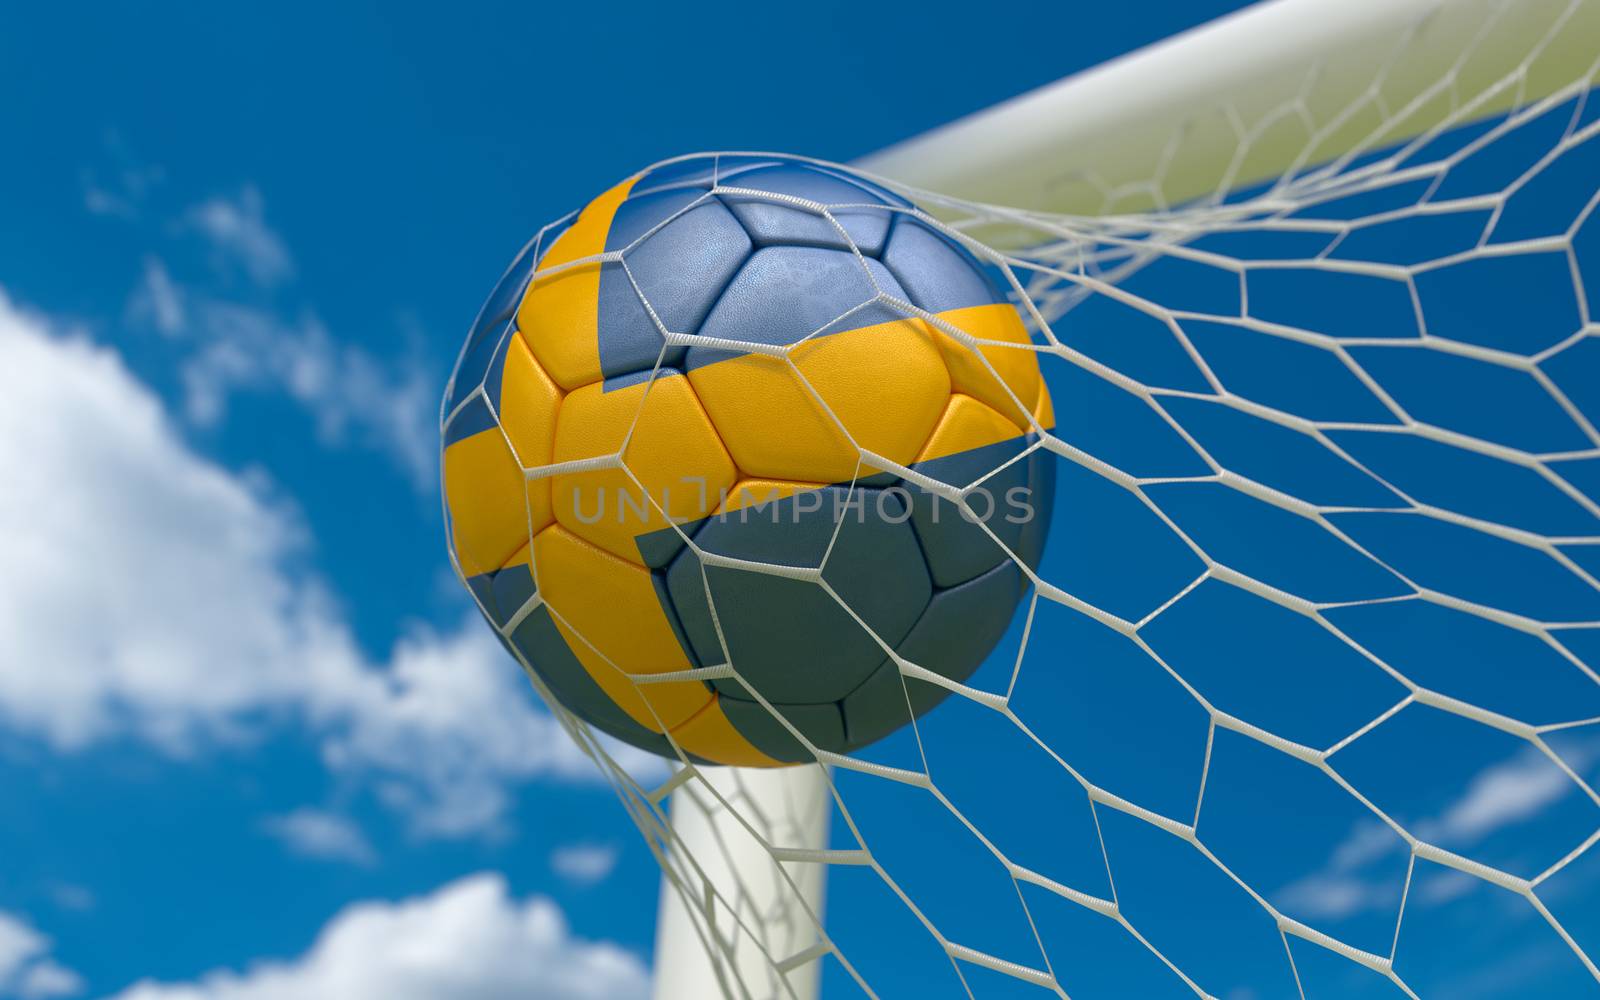 Sweden flag and soccer ball, football in goal net